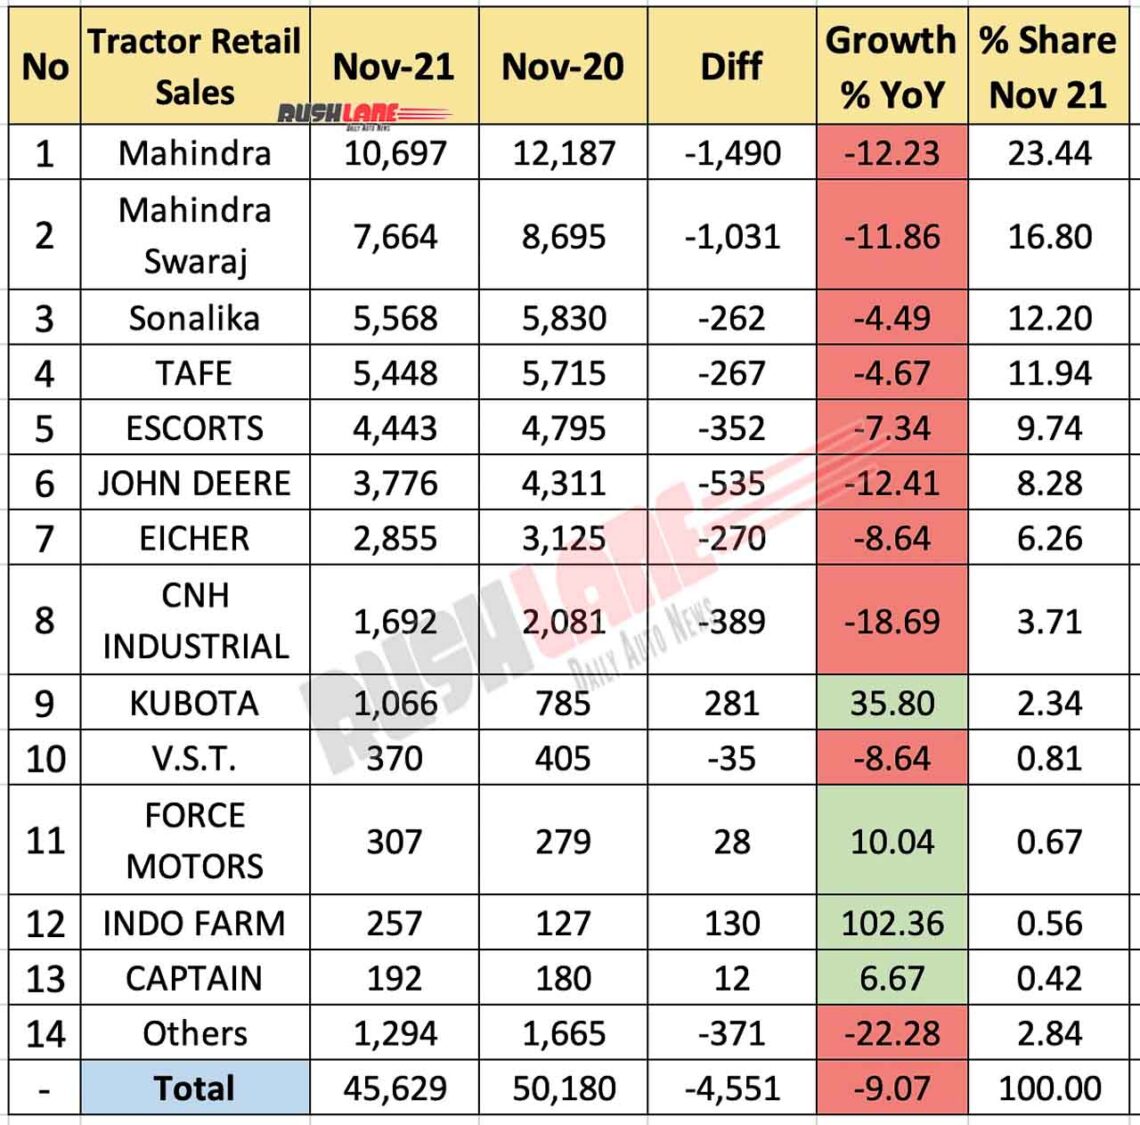 Tractor Sales Nov 2021 vs Nov 2020 (YoY)